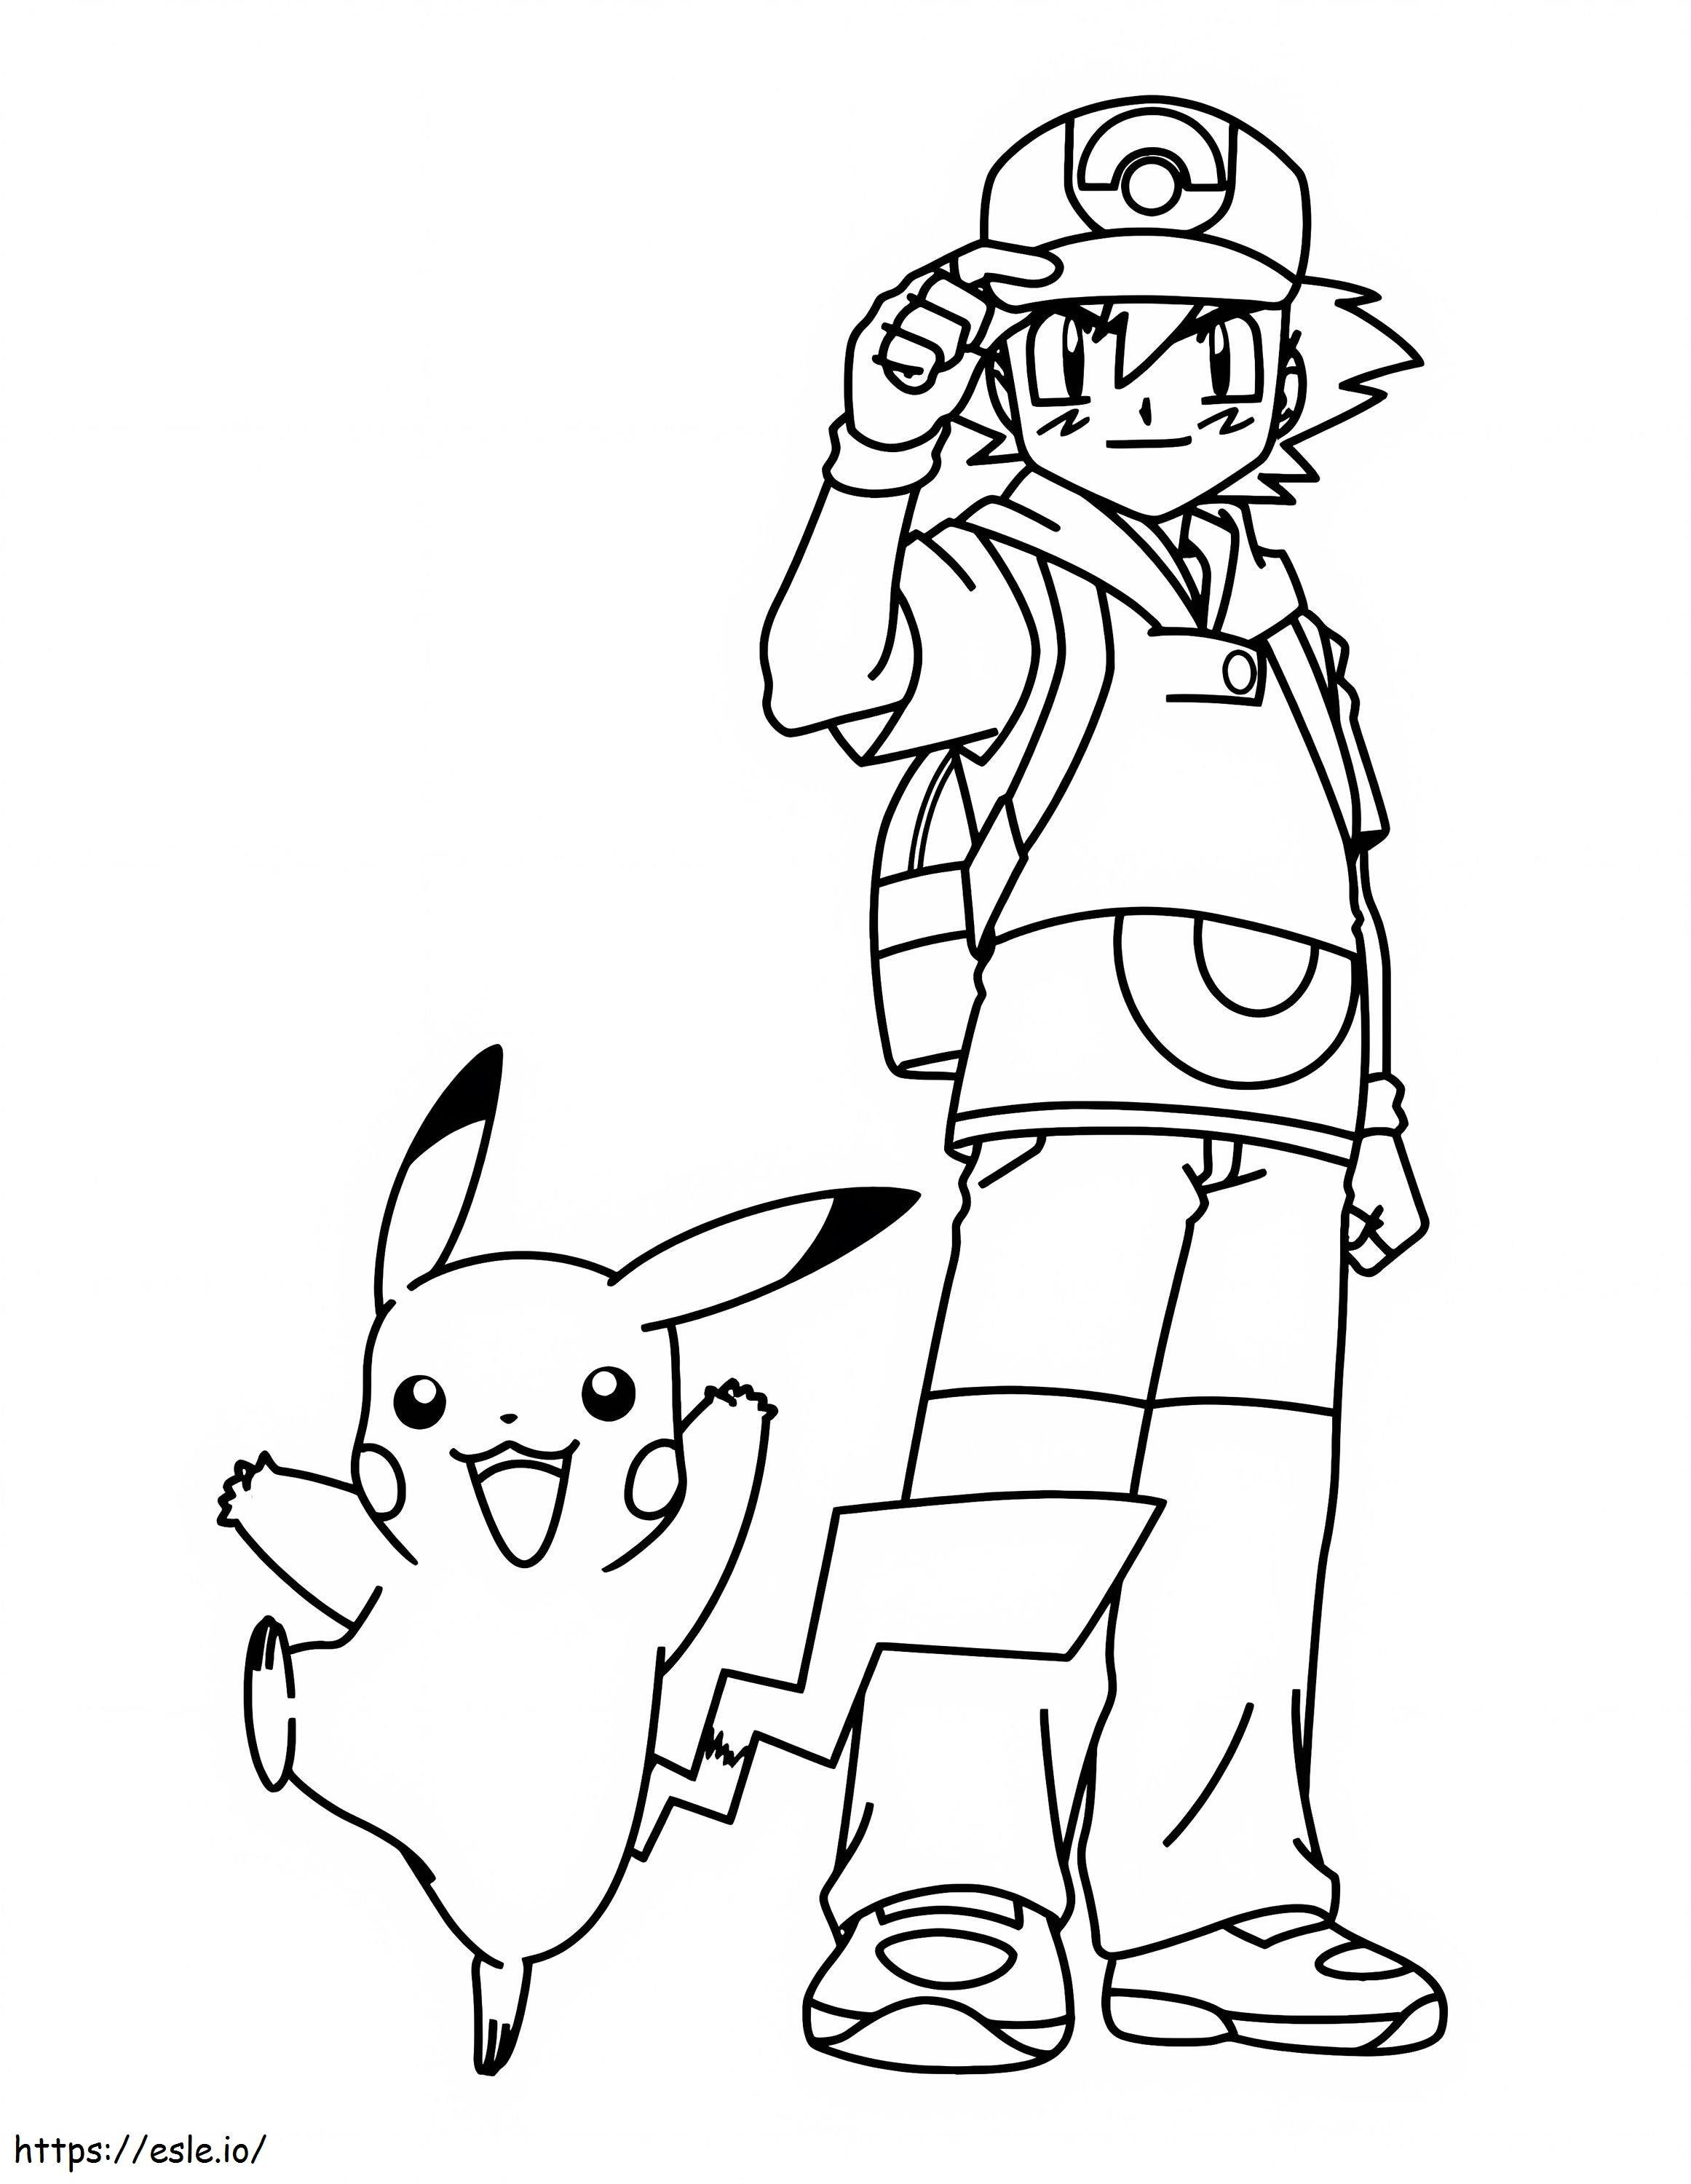 Fröhliches Pikachu und Ash Ketchum ausmalbilder